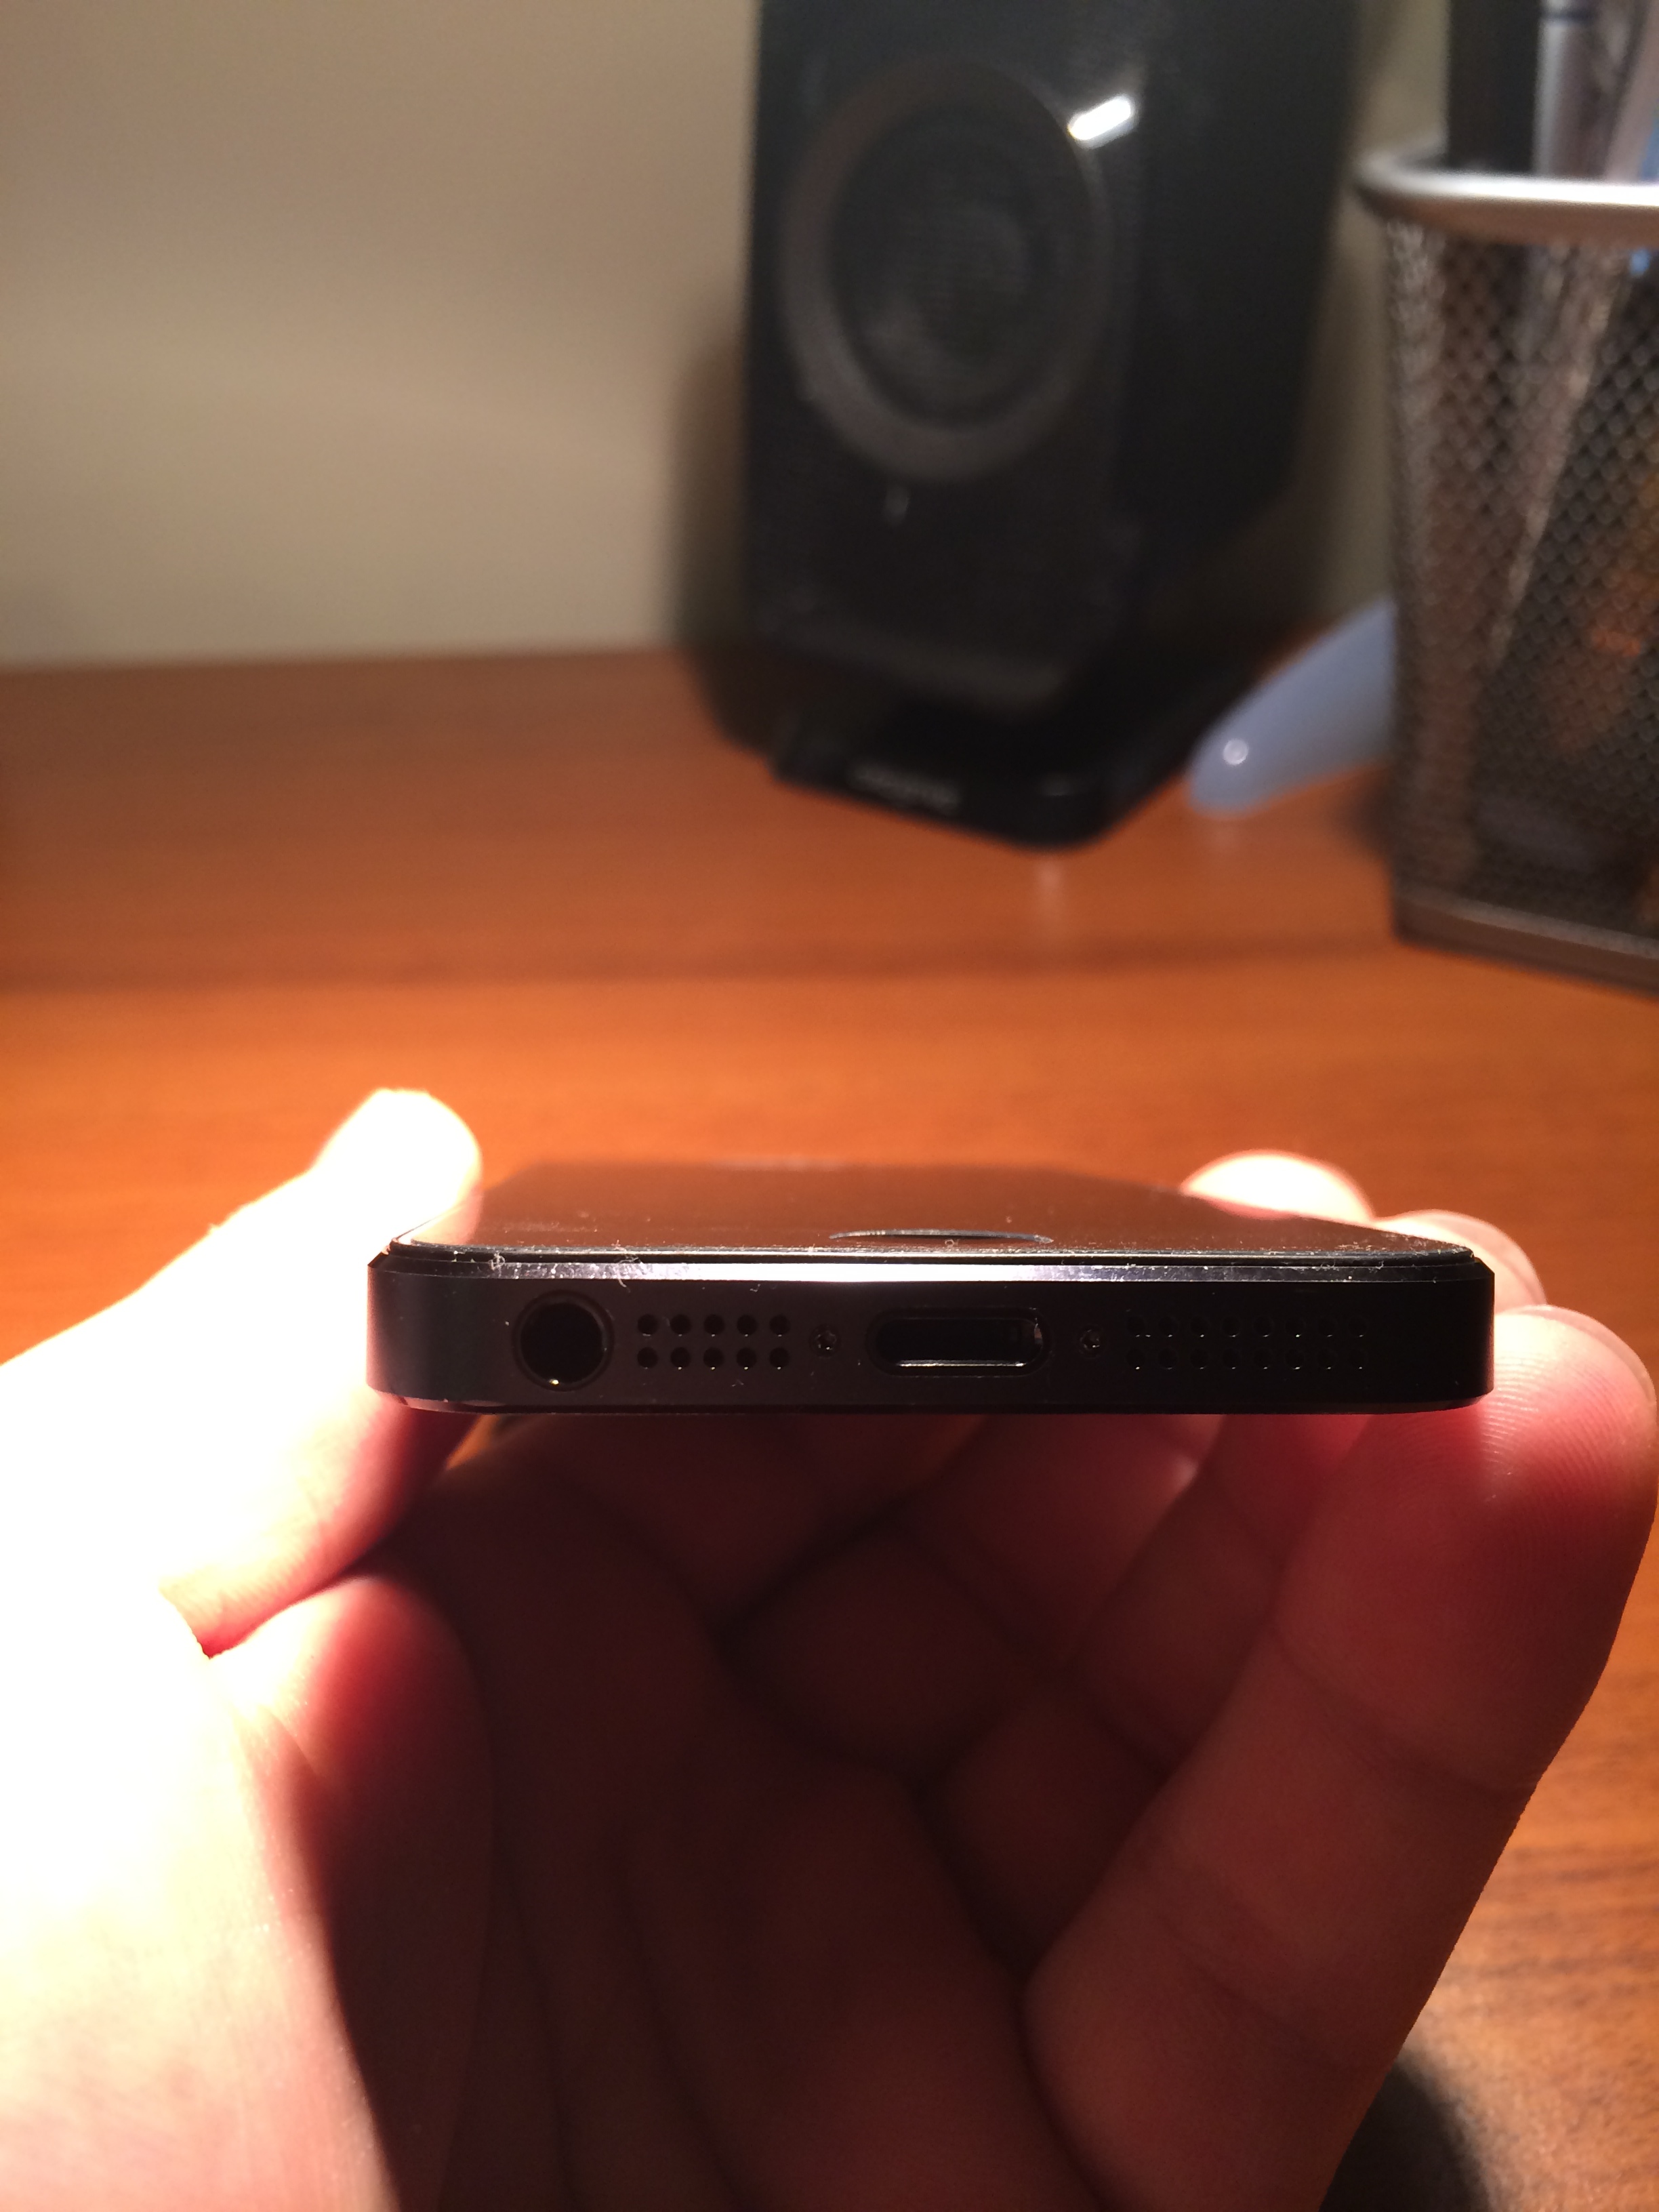  1150 TL Kayıtlı Tertemiz iPhone 5 Siyah 16gb